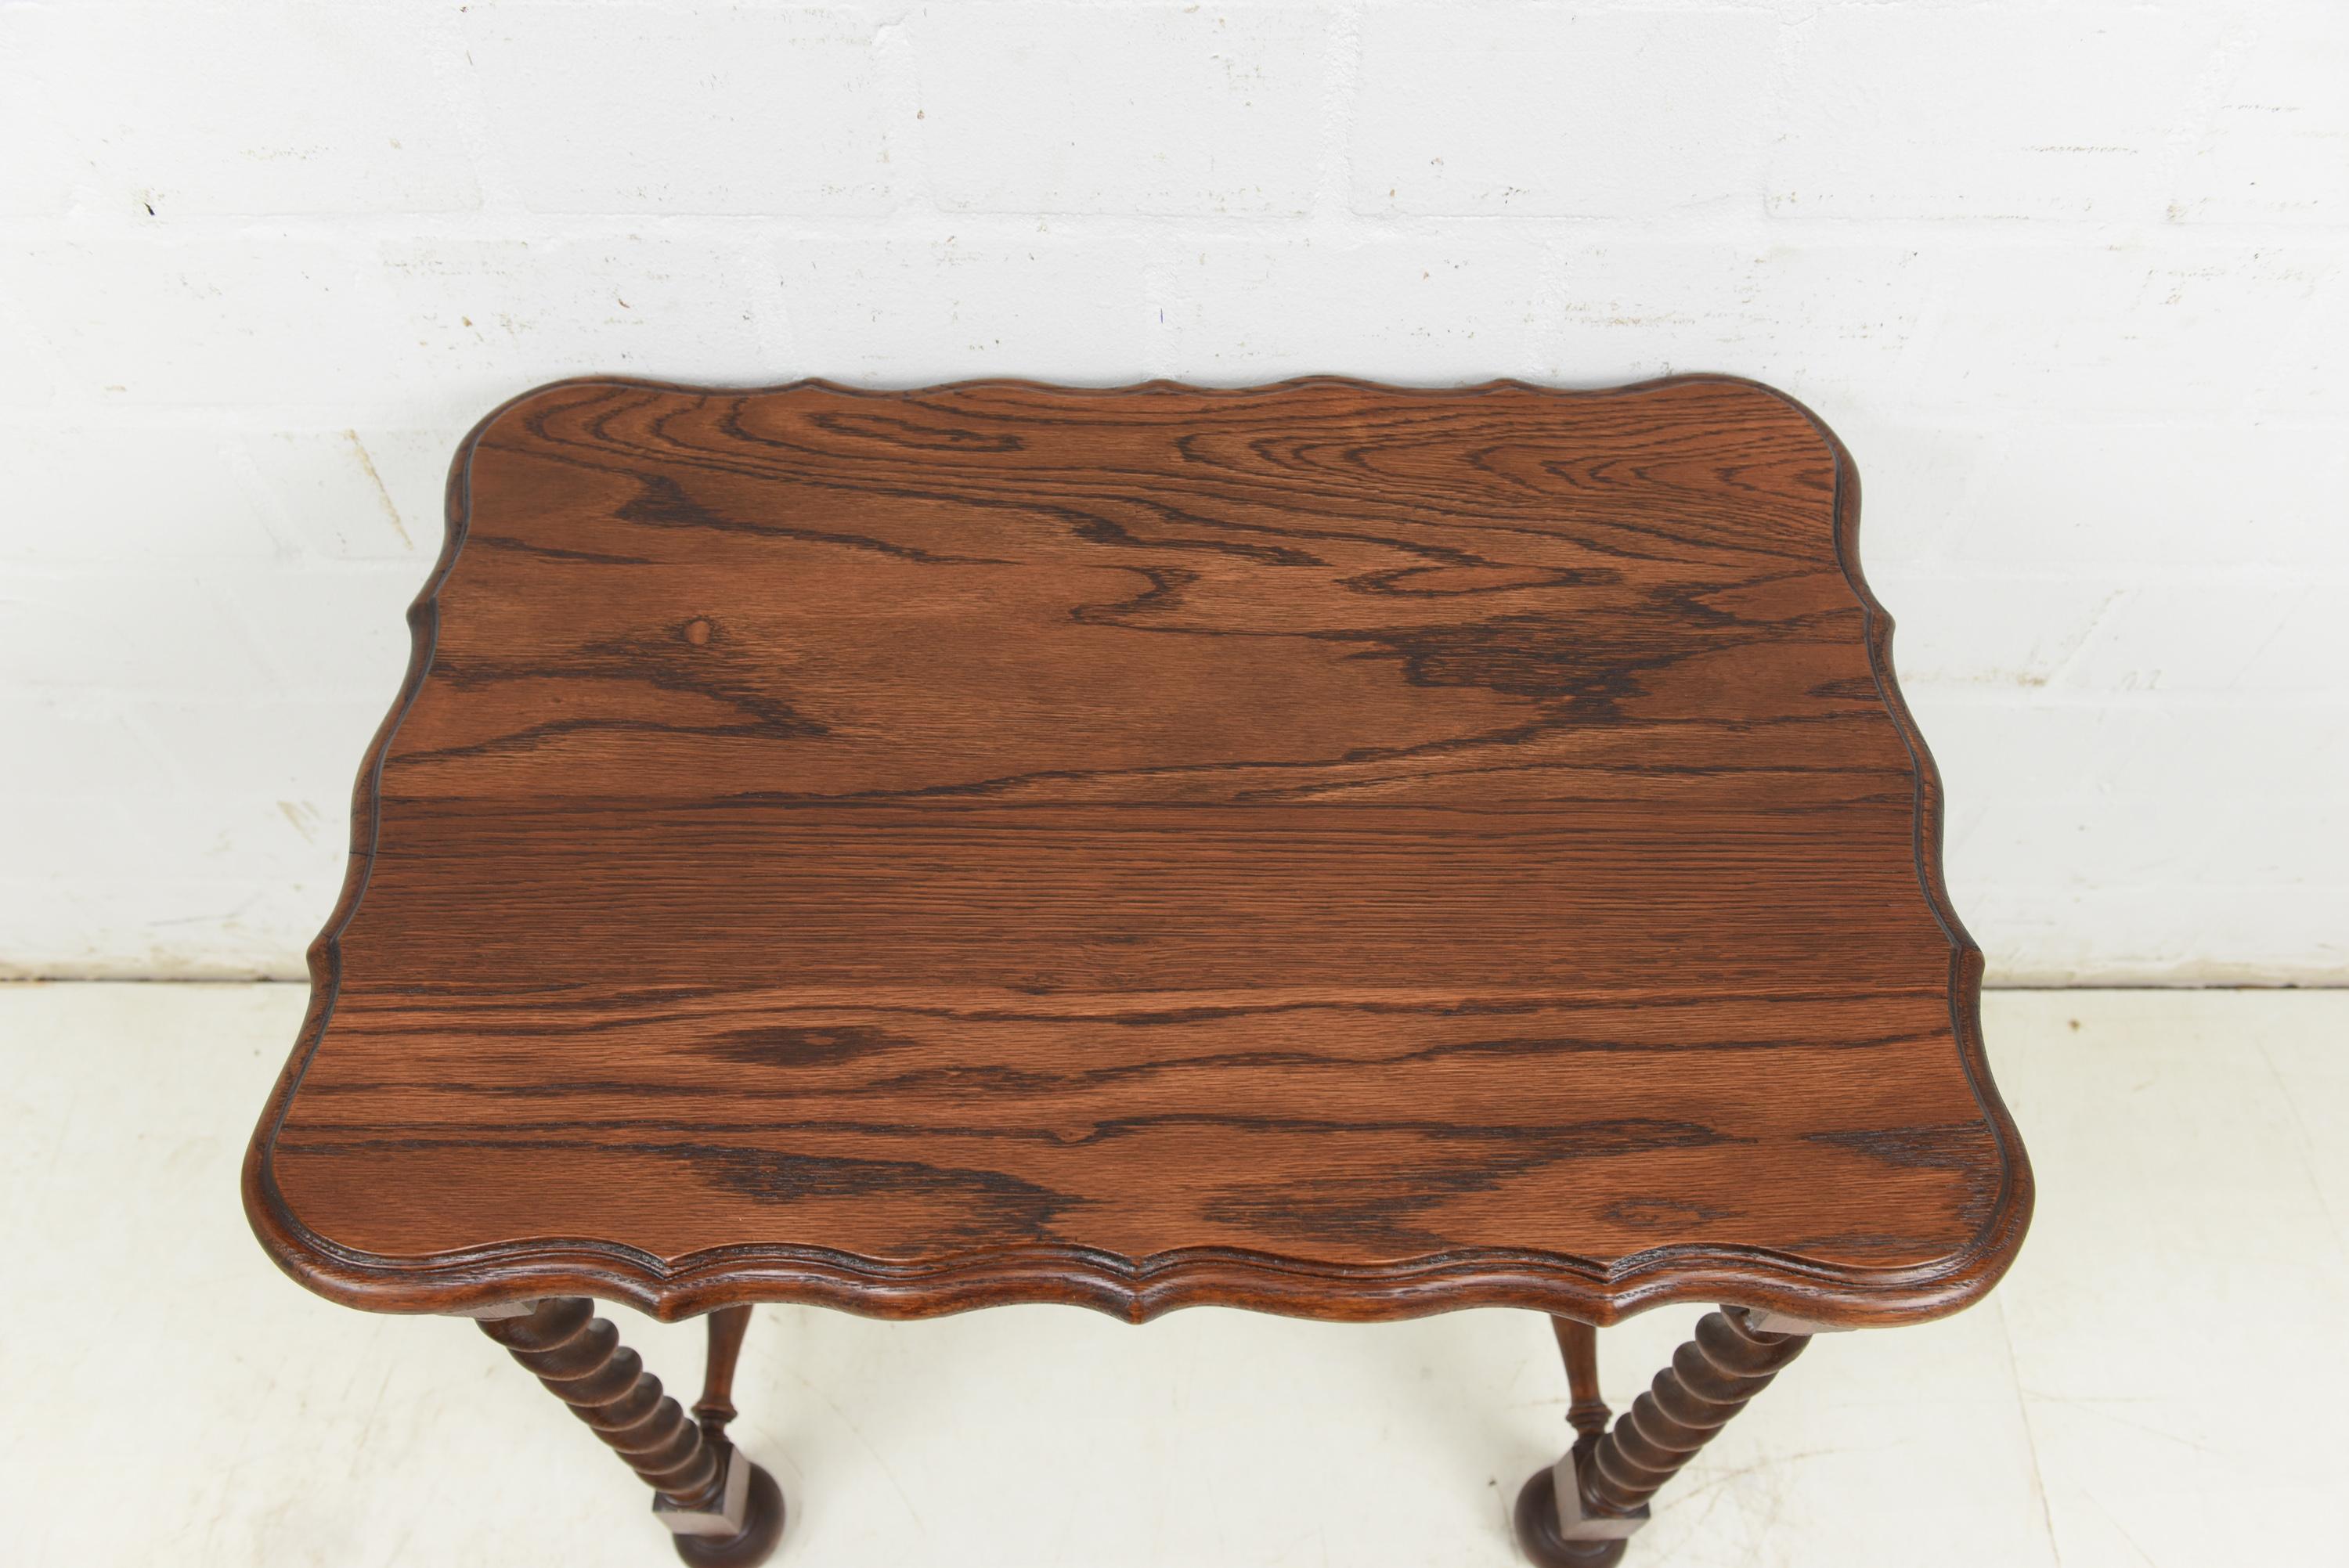 Gründerzeit Side Table / Coffee Table in Solid Oak, 1890 In Good Condition For Sale In Lüdinghausen, DE